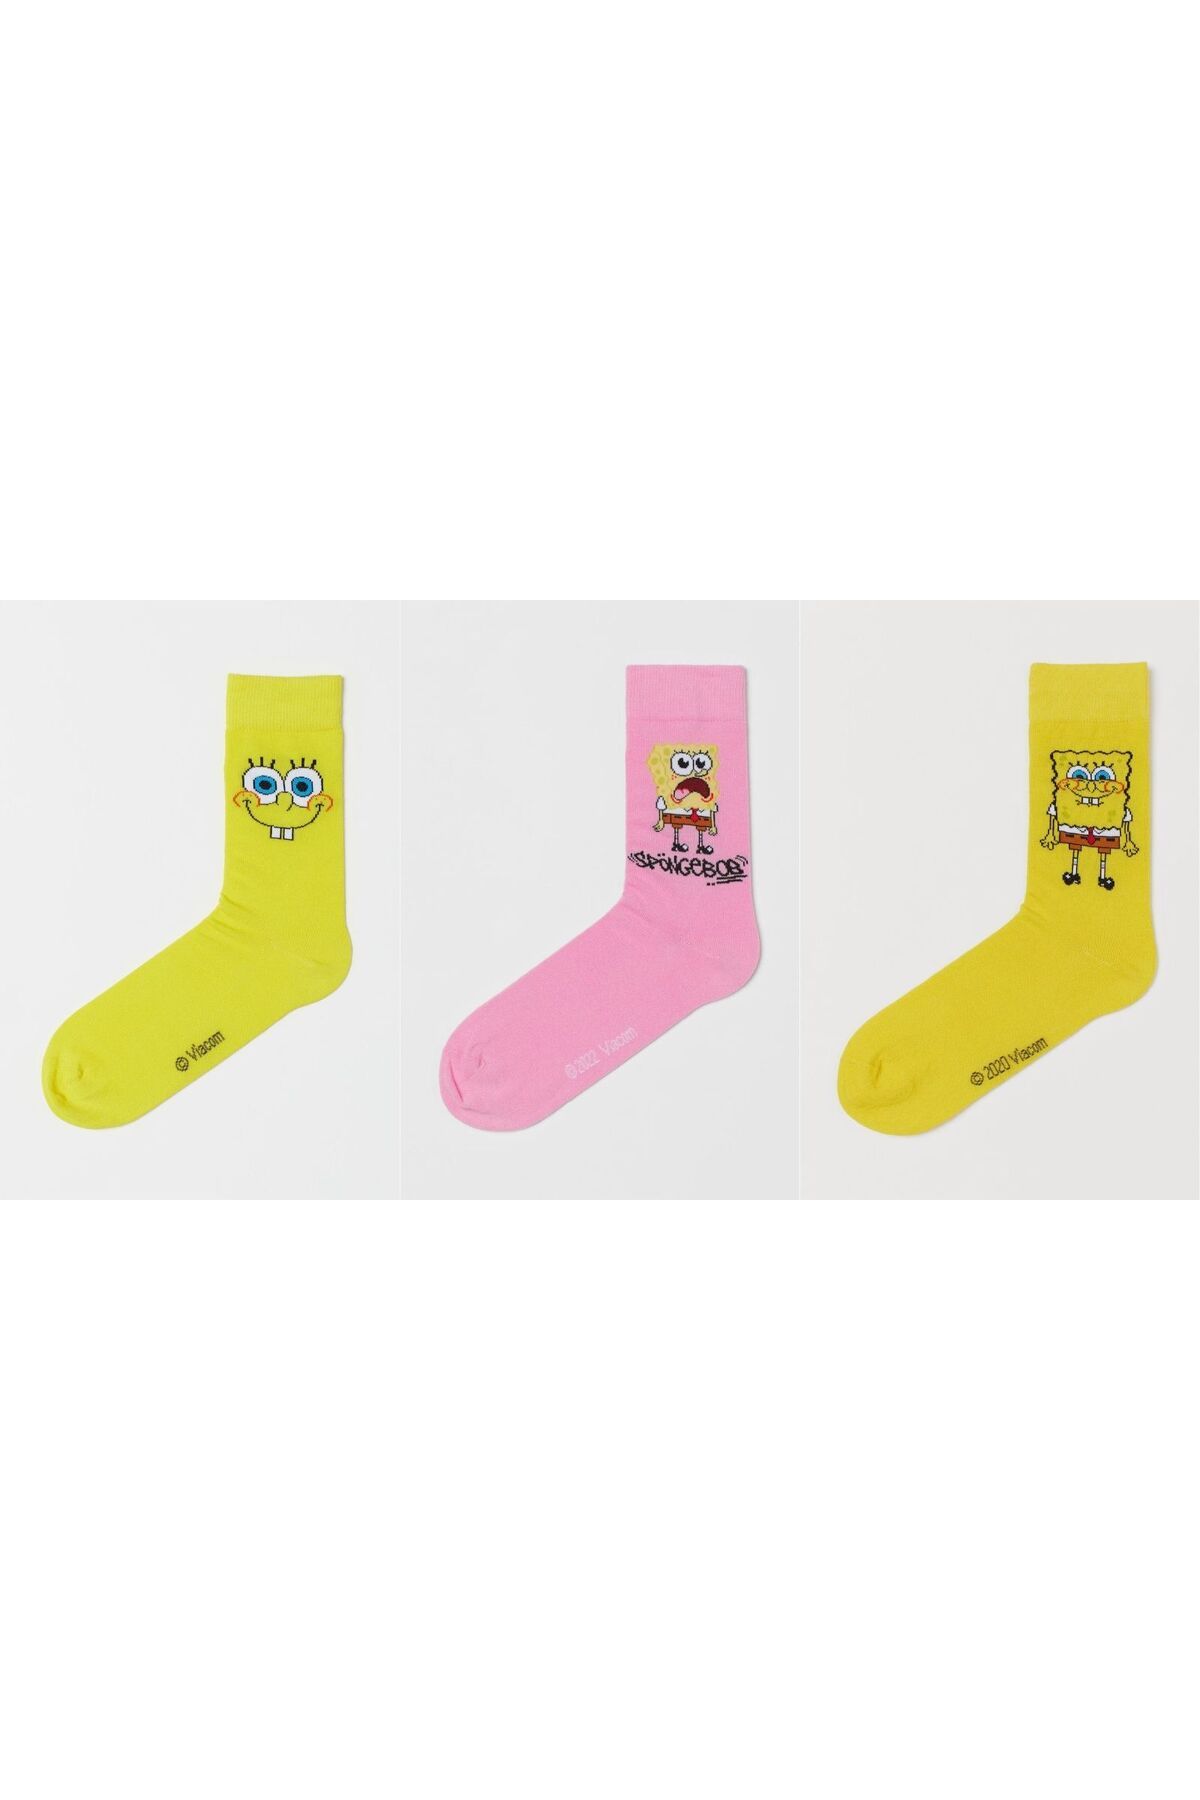 Happy Socks Spongebob Sarı Pembe Çorap Seti 3'lü